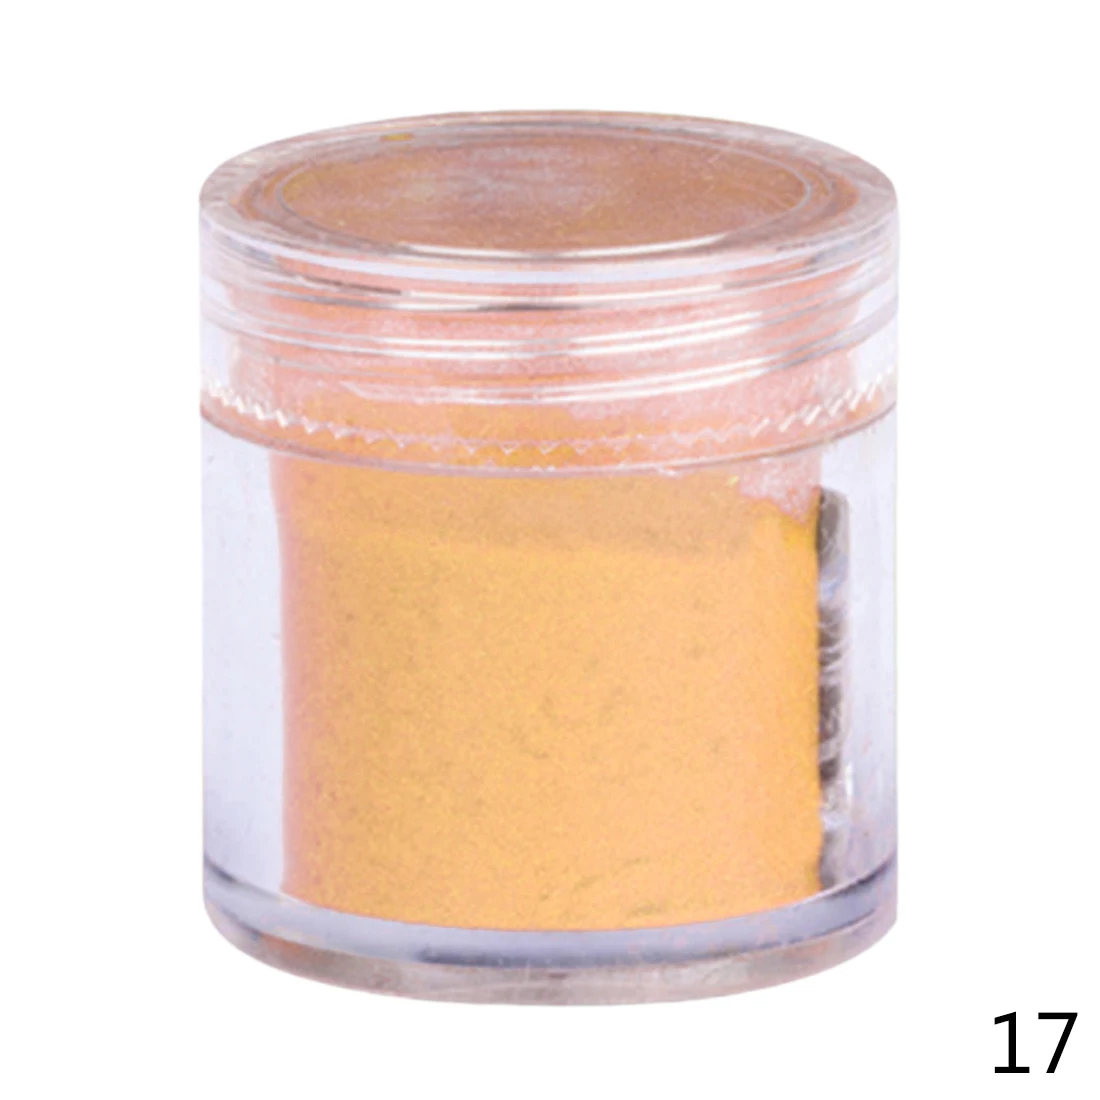 26 цветов DIY бархатный флокирующий порошок для бархатного маникюра, лак для ногтей, акриловые порошки жидкостей 10 г - Цвет: Pale Orange